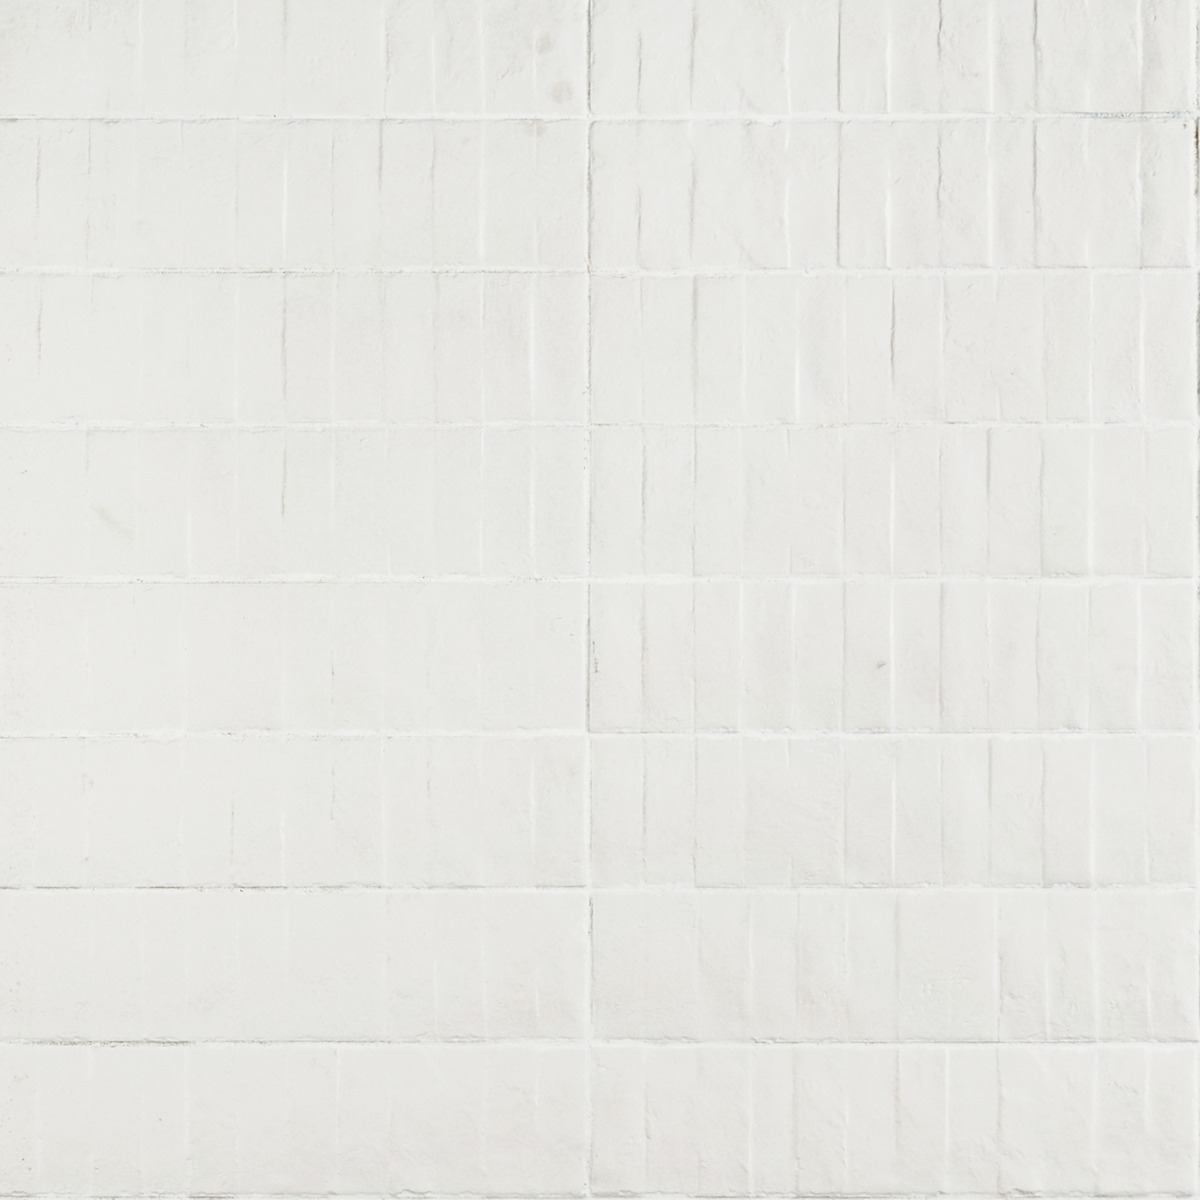 Rework Plaster White 3x12 Matte Porcelain Tile